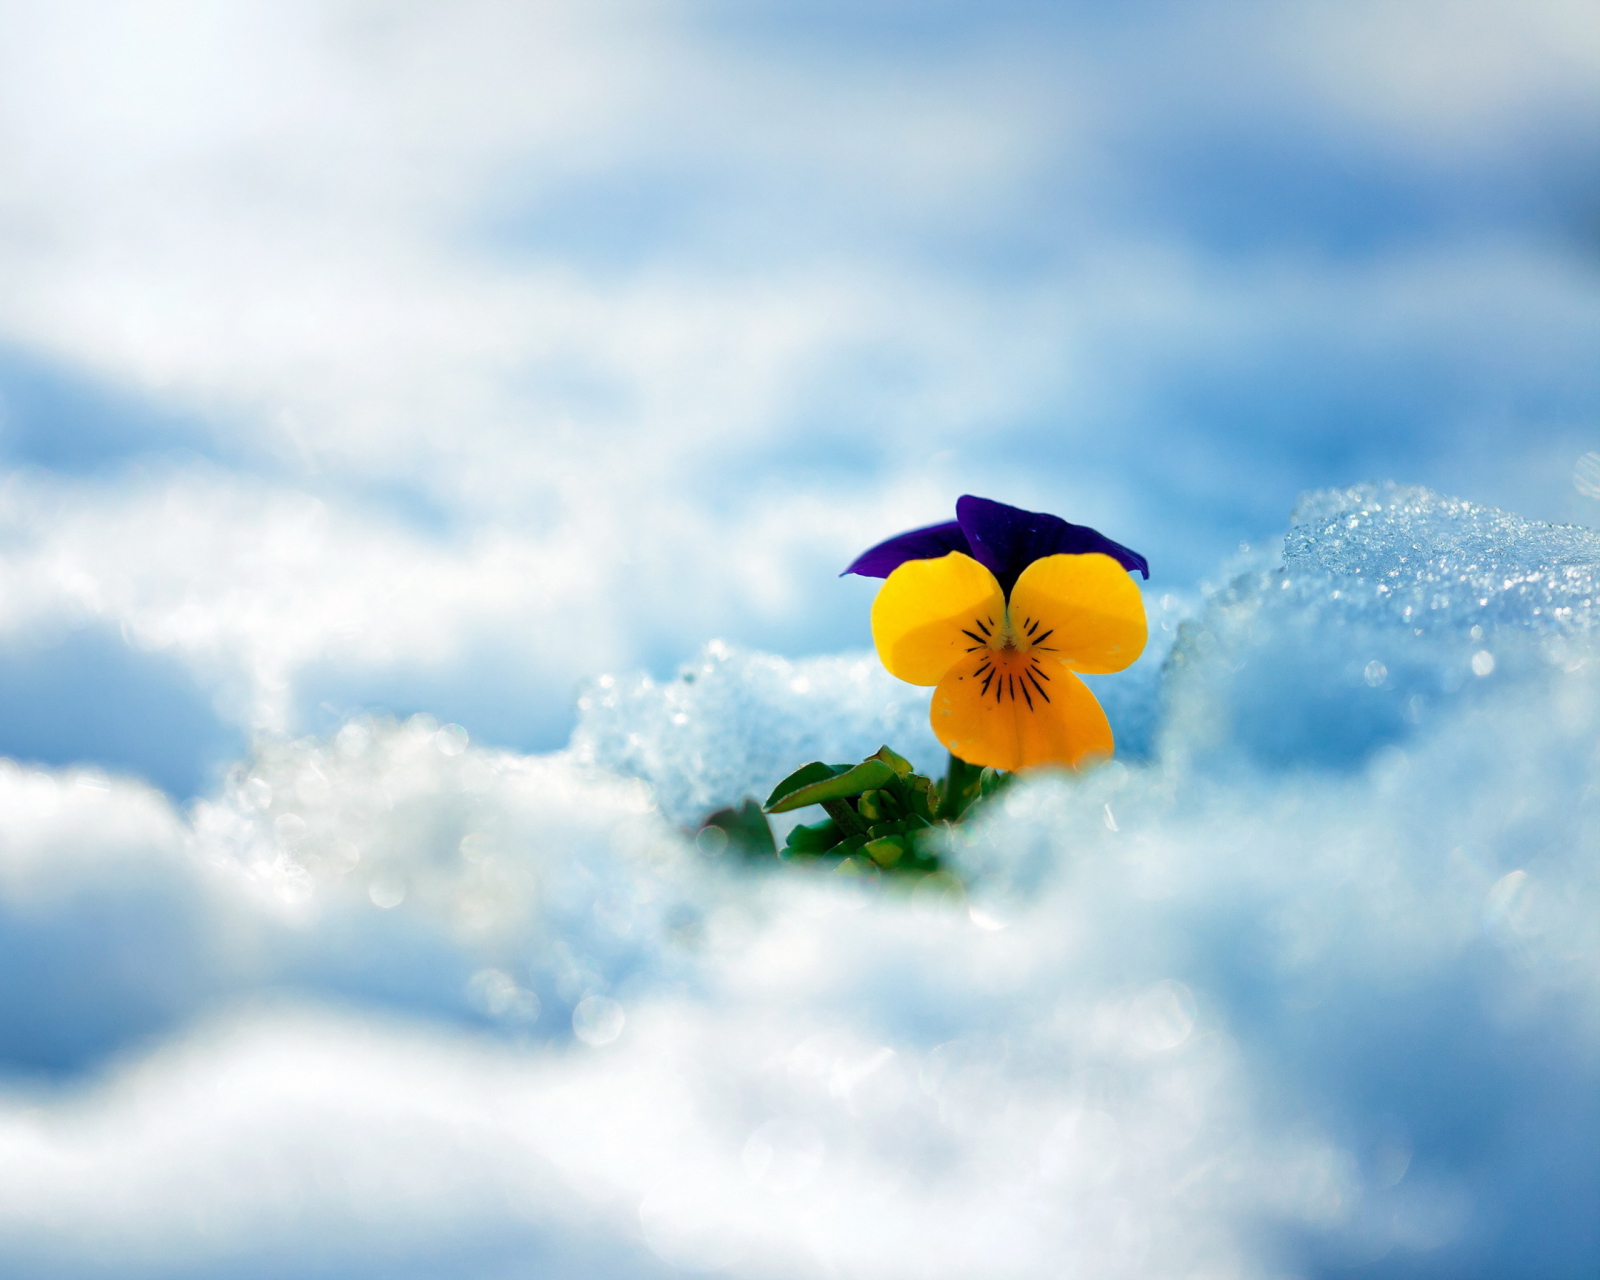 Little Yellow Flower In Snow screenshot #1 1600x1280